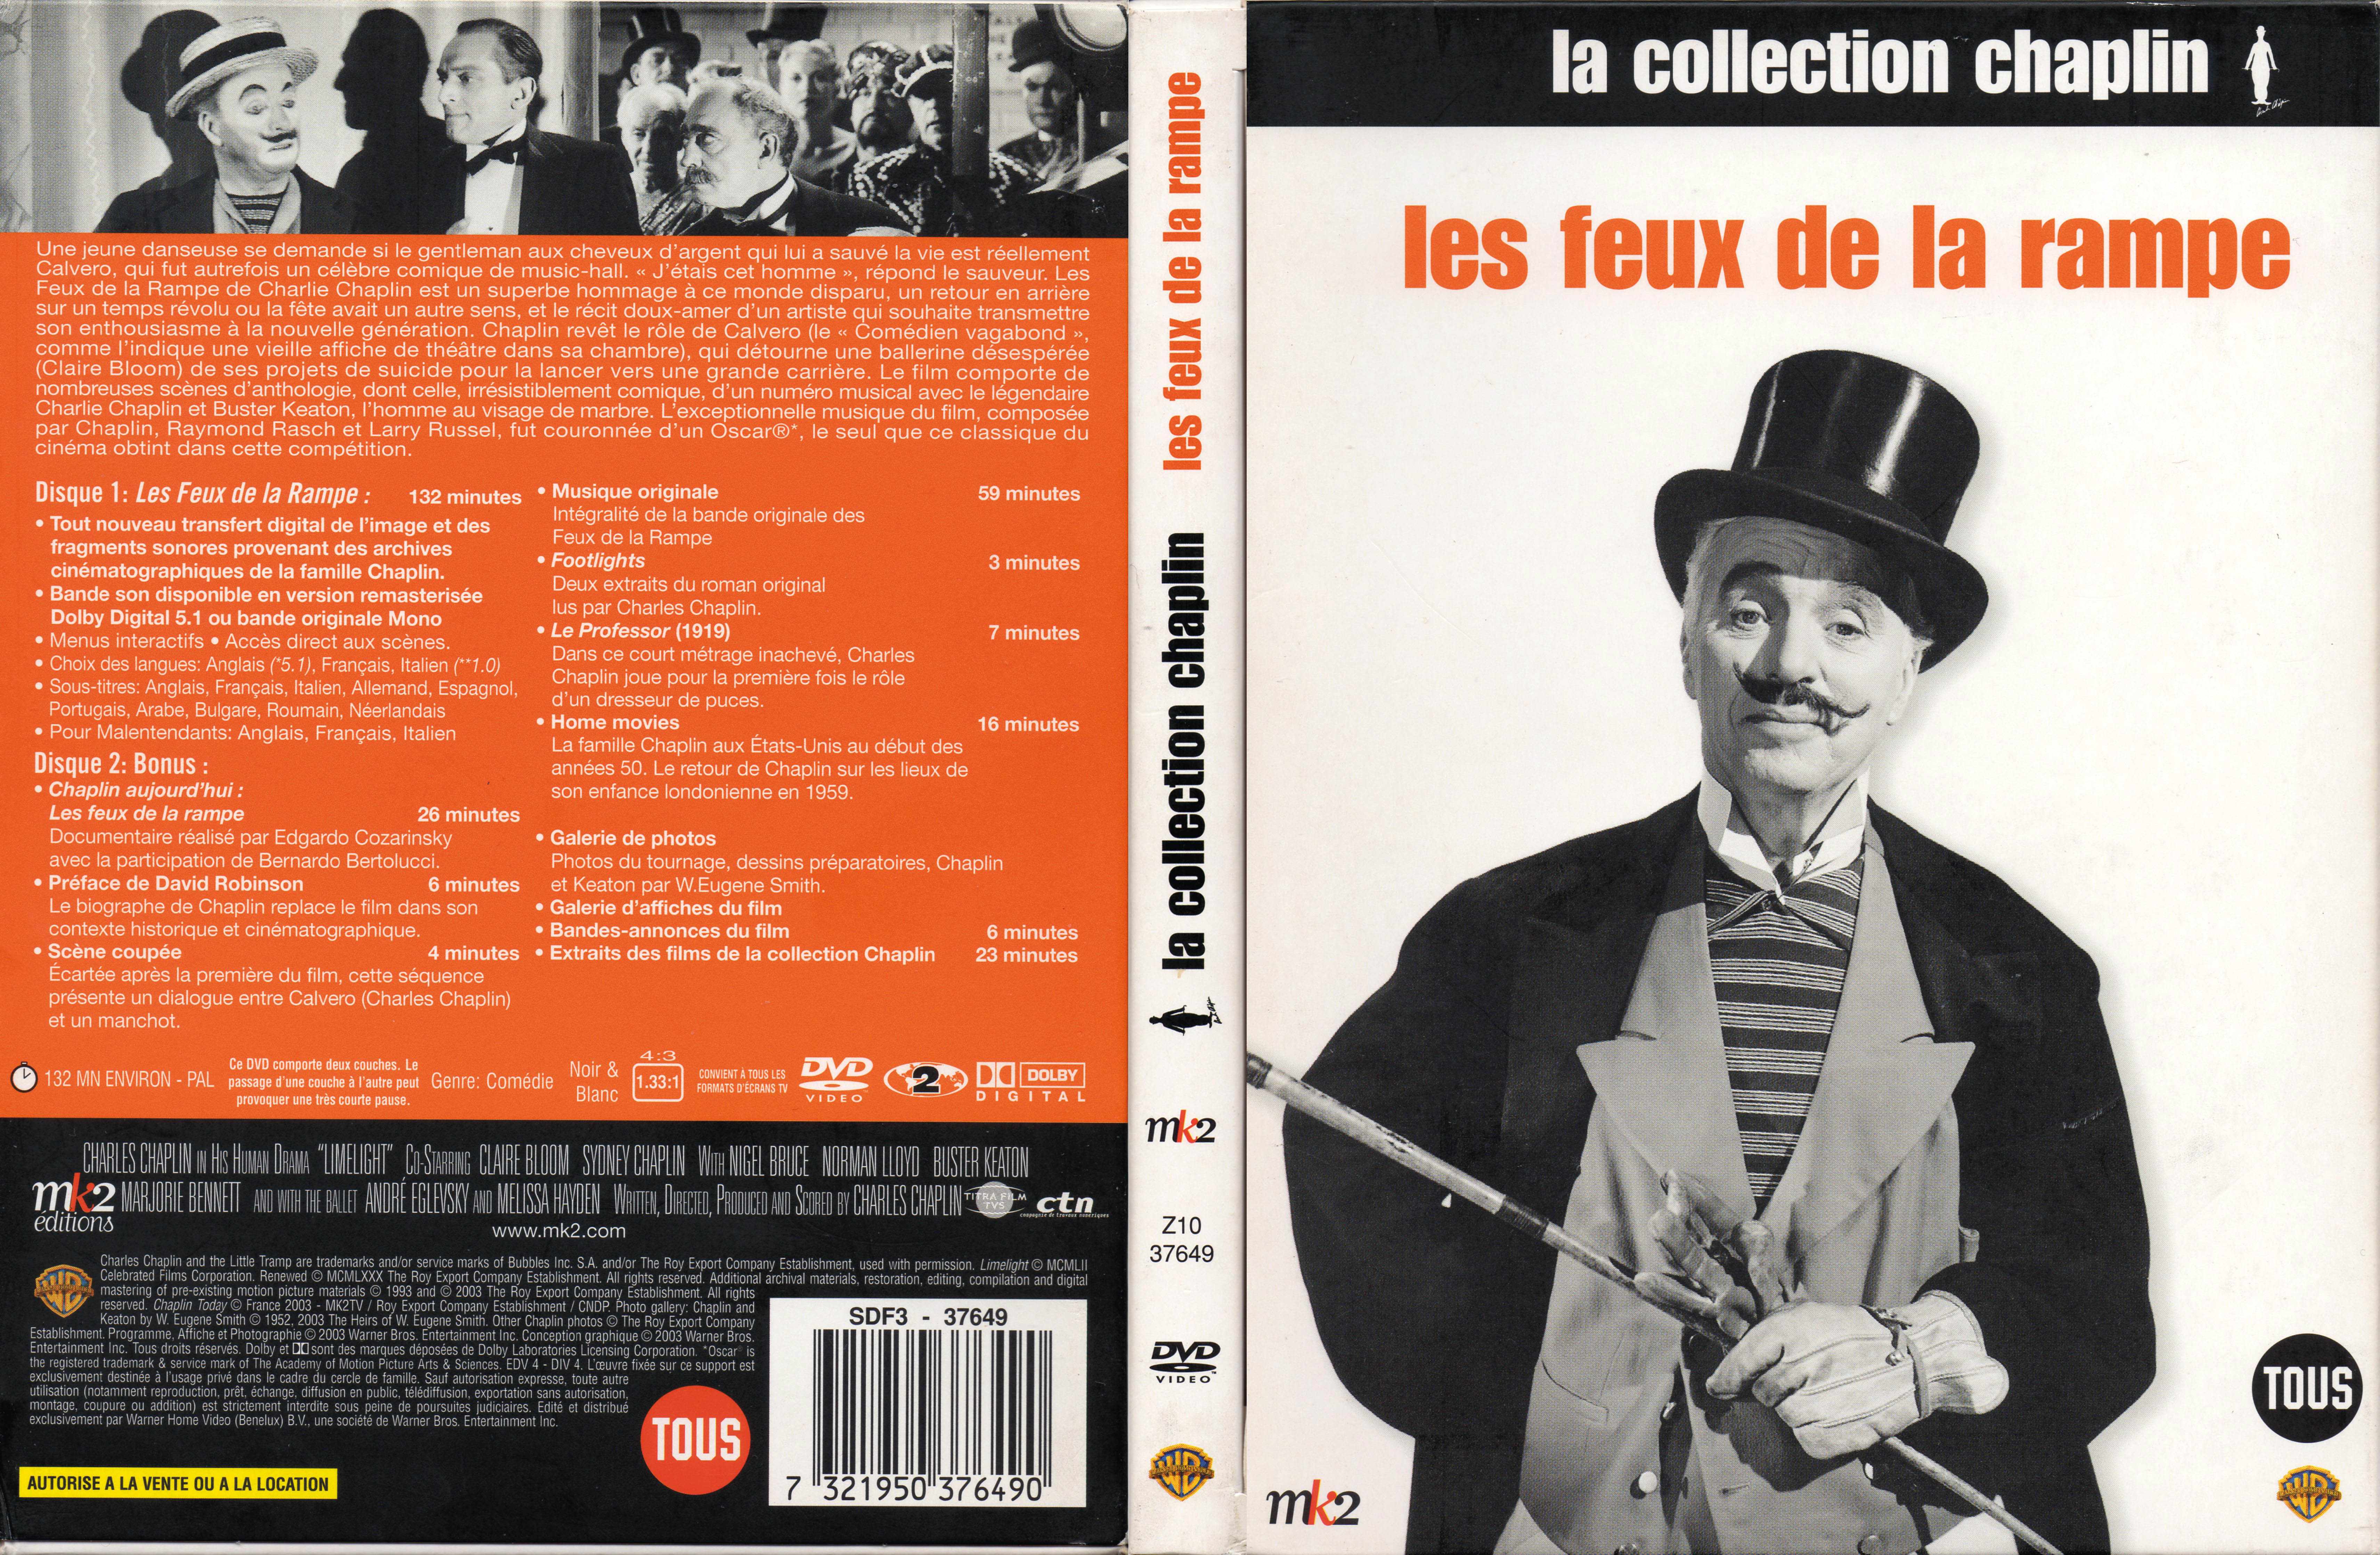 Jaquette DVD Les feux de la rampe (BLU-RAY) v2